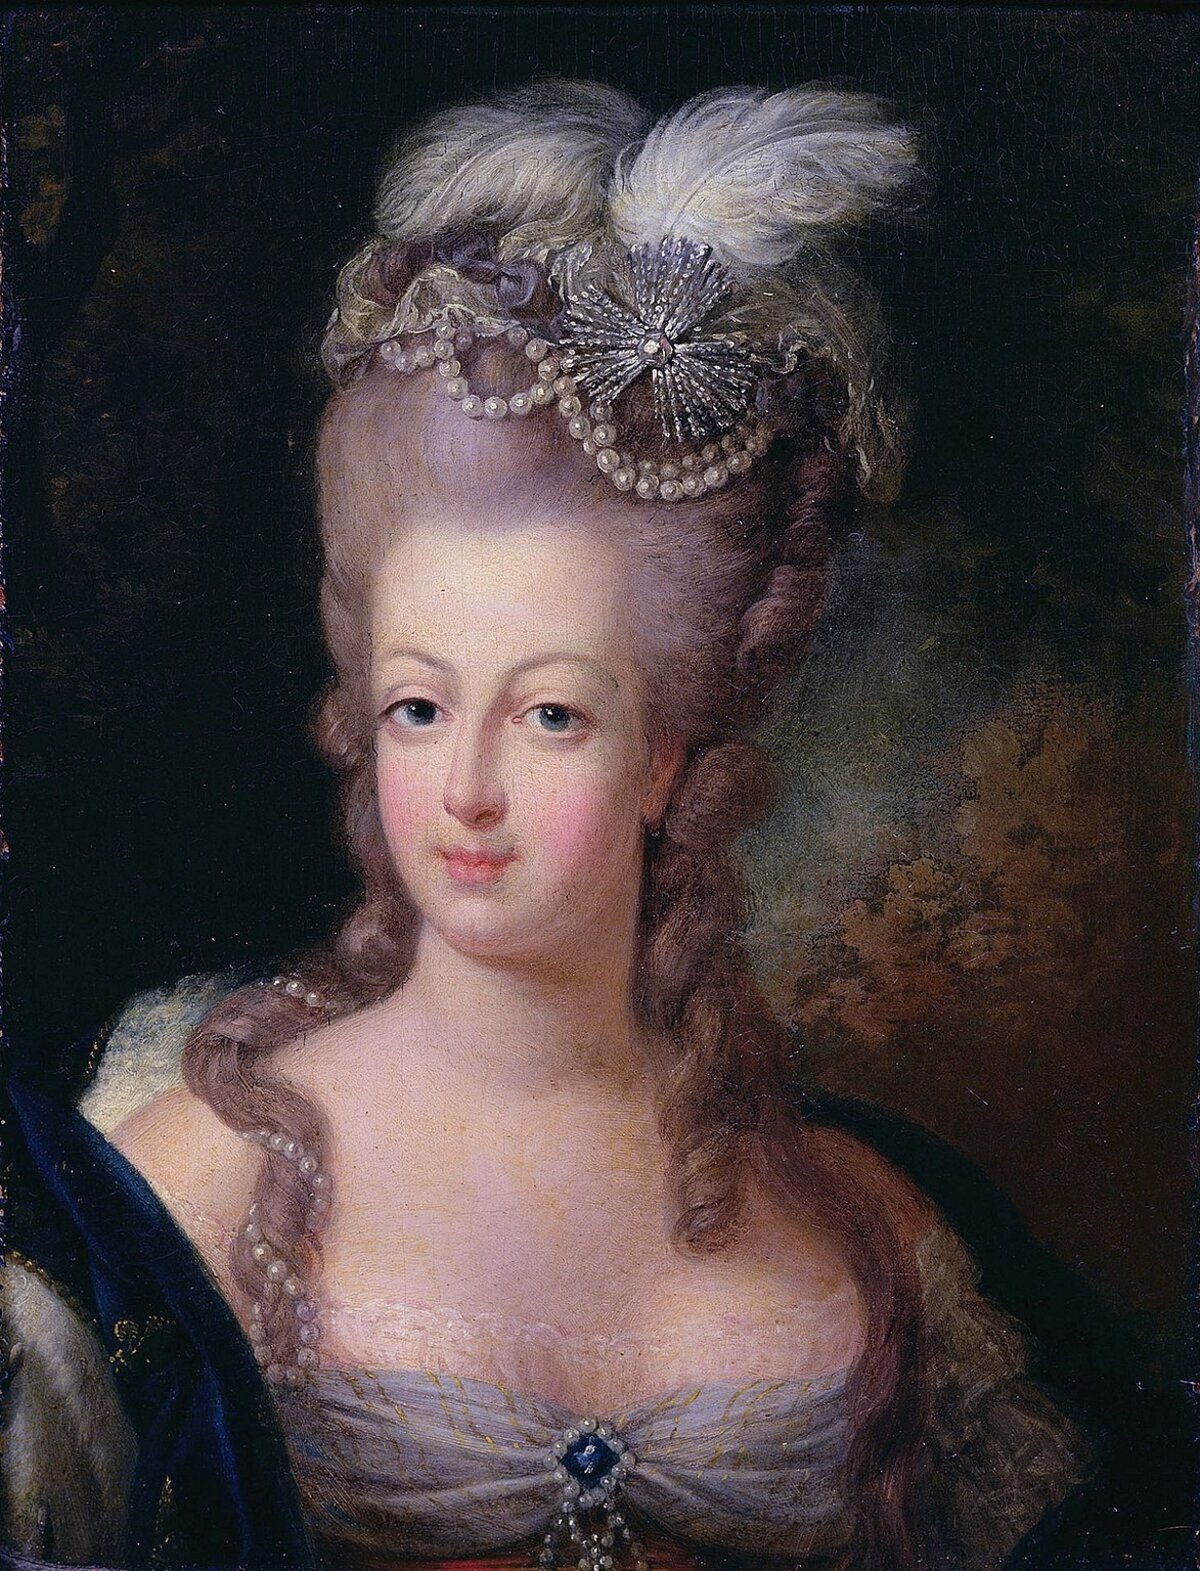 Marie Antoinette Maria Antonia Josepha Joanna, ismertebb nevén Marie Antoinette 1755. november 2-án született Bécsben. Franciaország utolsó királynője Madame Deficit gúnynéven a monarchia túlkapásainak szimbólumává vált, számtalan röpirat vádolta pazarlással és házasságtöréssel. A pénzügyi káosz és a rossz termés országszerte megemelte a gabonaárakat, így Marie Antoinette extravagáns életmódjával gyűlölettel teli kritikák kereszttüzébe került. Kilenc hónappal férje, XVI. Lajos után a forradalmi törvényszék parancsára 1793-ban, 37 éves korában lefejezték.
